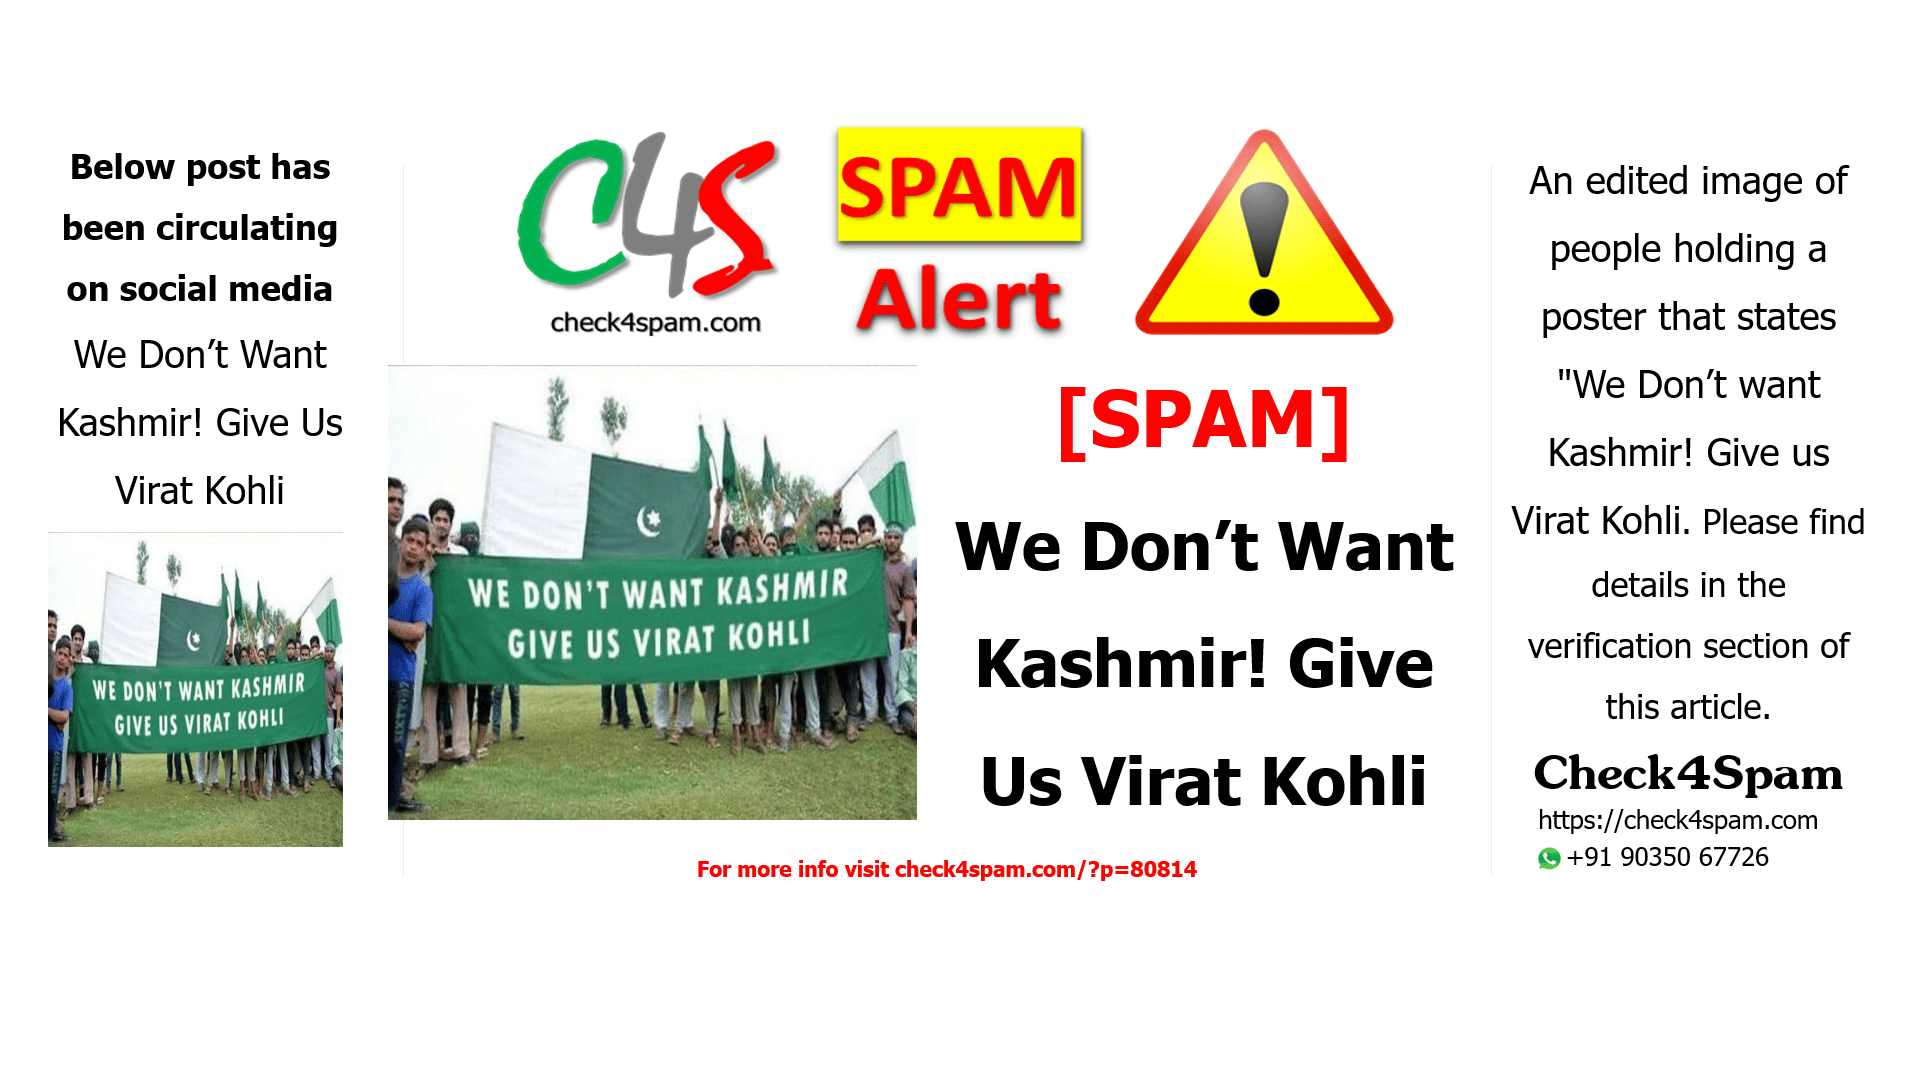 We Don’t Want Kashmir! Give Us Virat Kohli